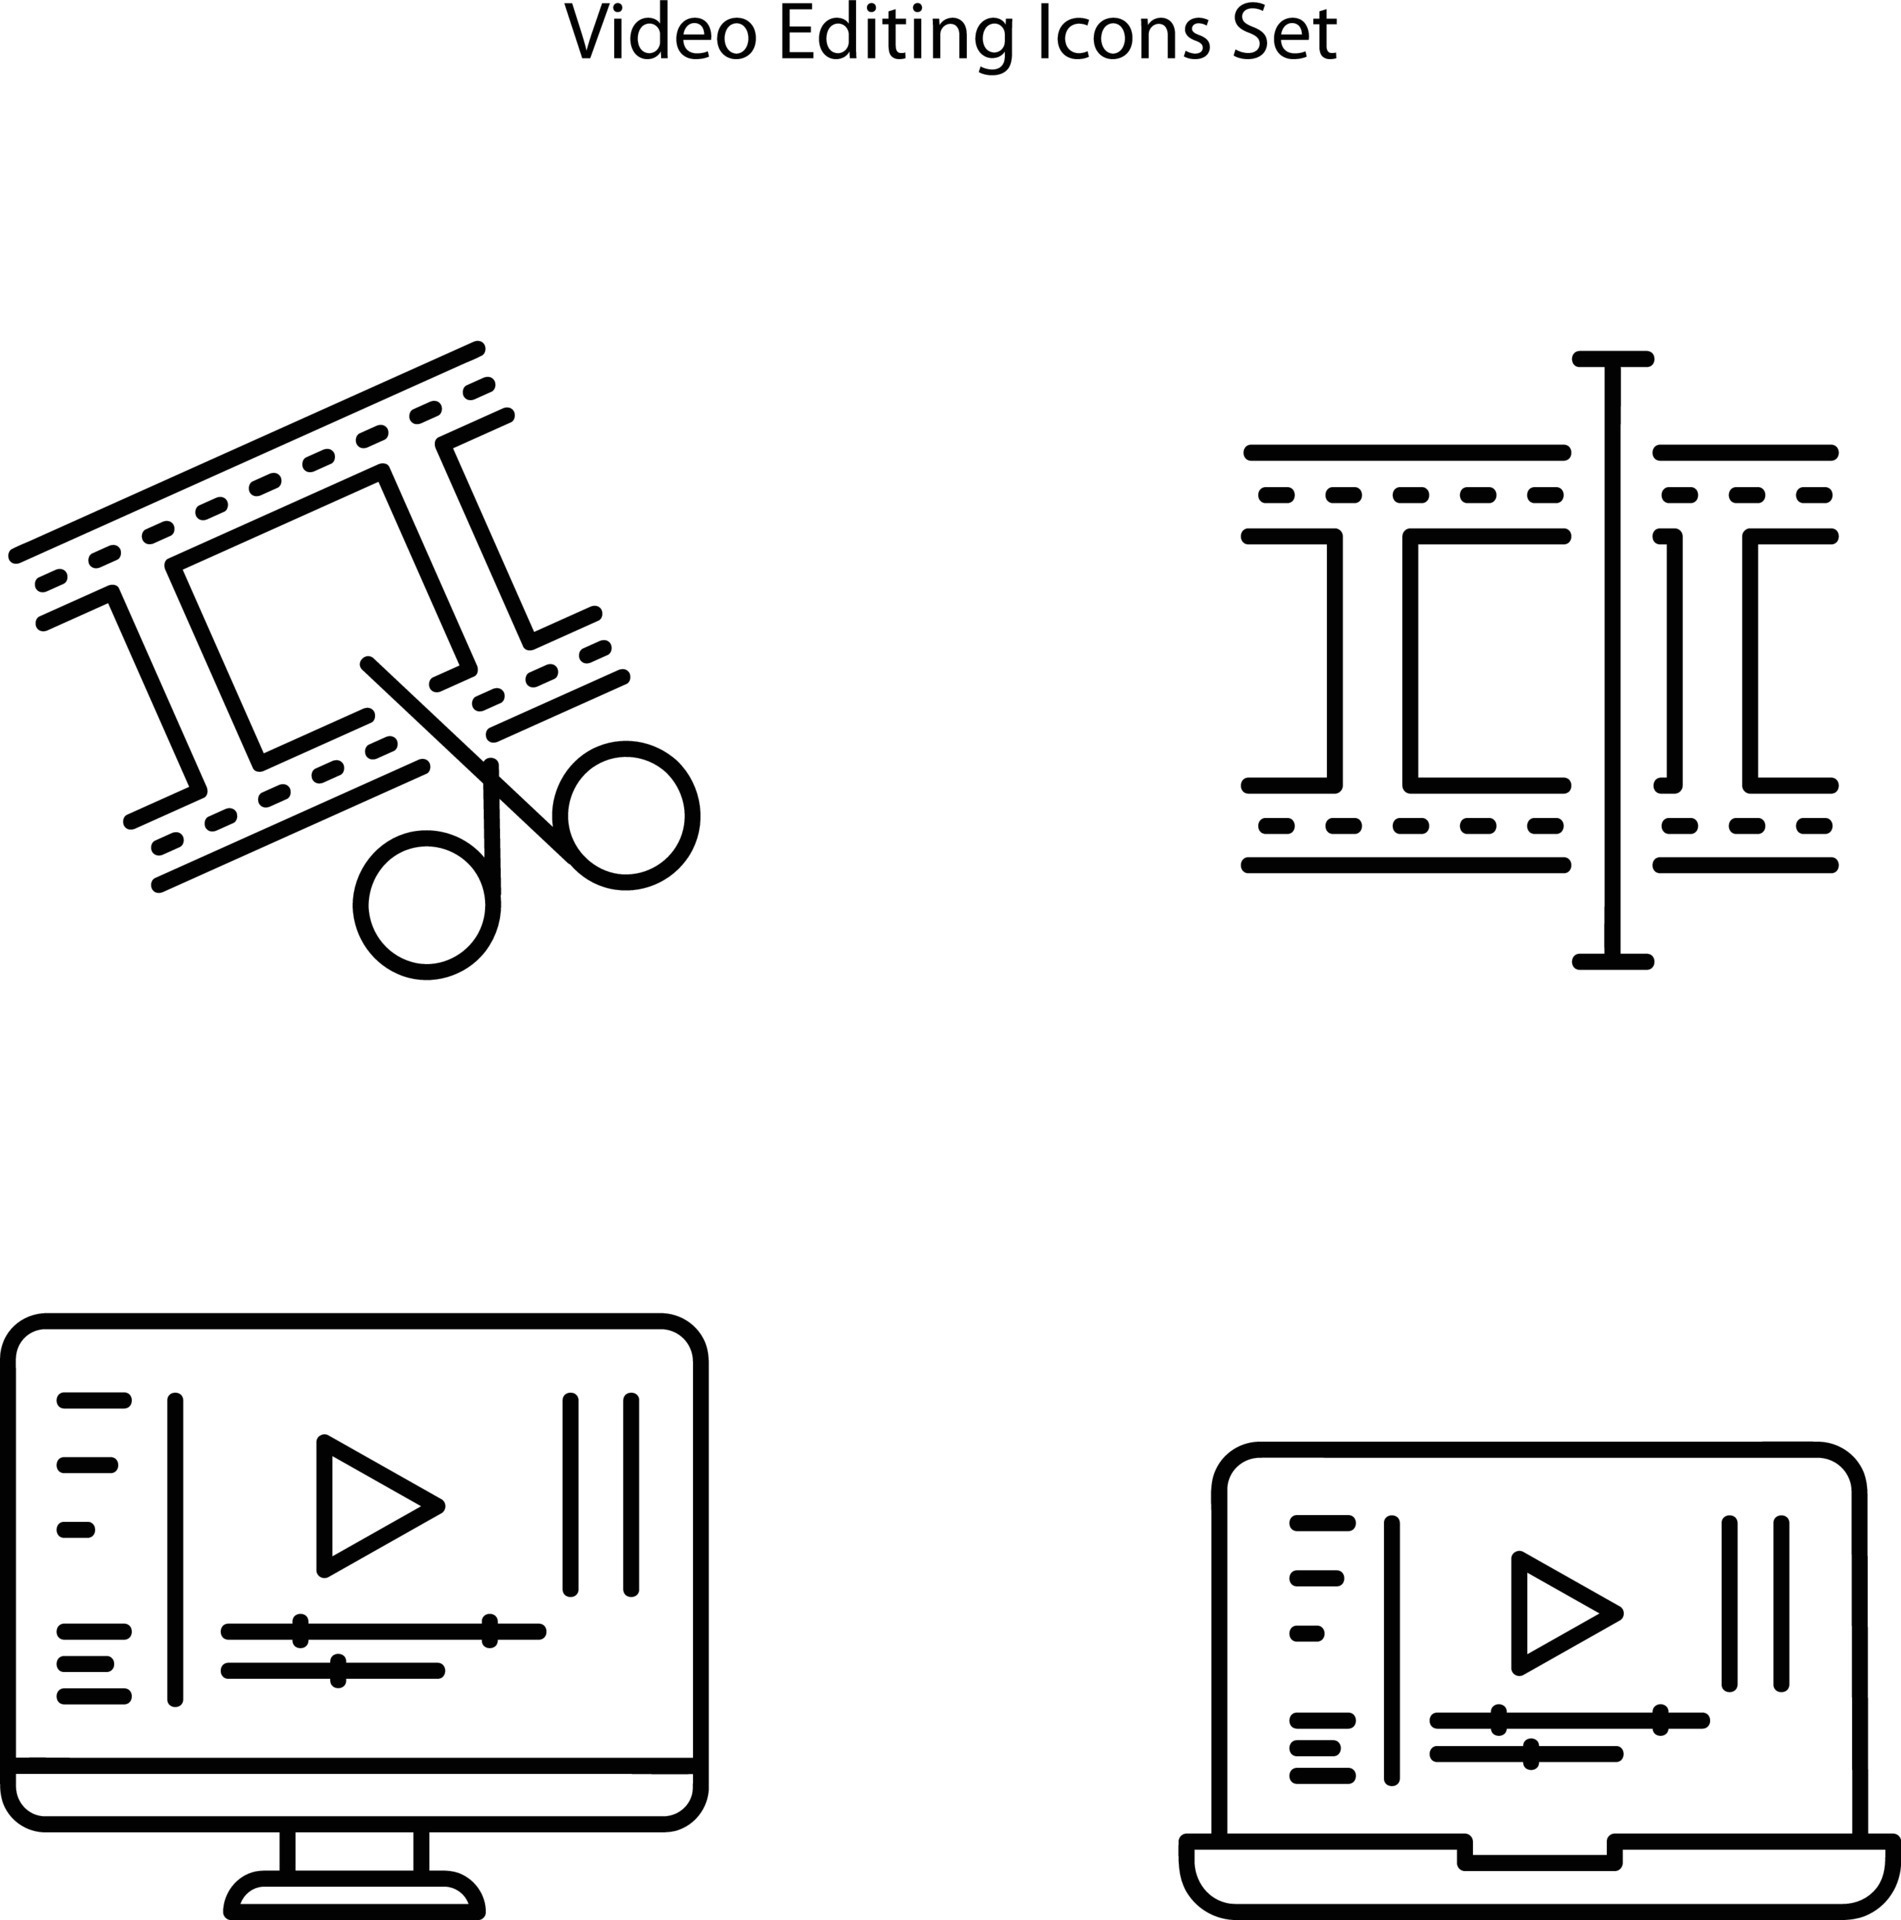 Với những Video editing Icon đẹp mắt trên nền trắng tinh khôi, tất cả những gì bạn cần làm là chọn một Icon phù hợp và làm mới video của mình ngay lập tức!